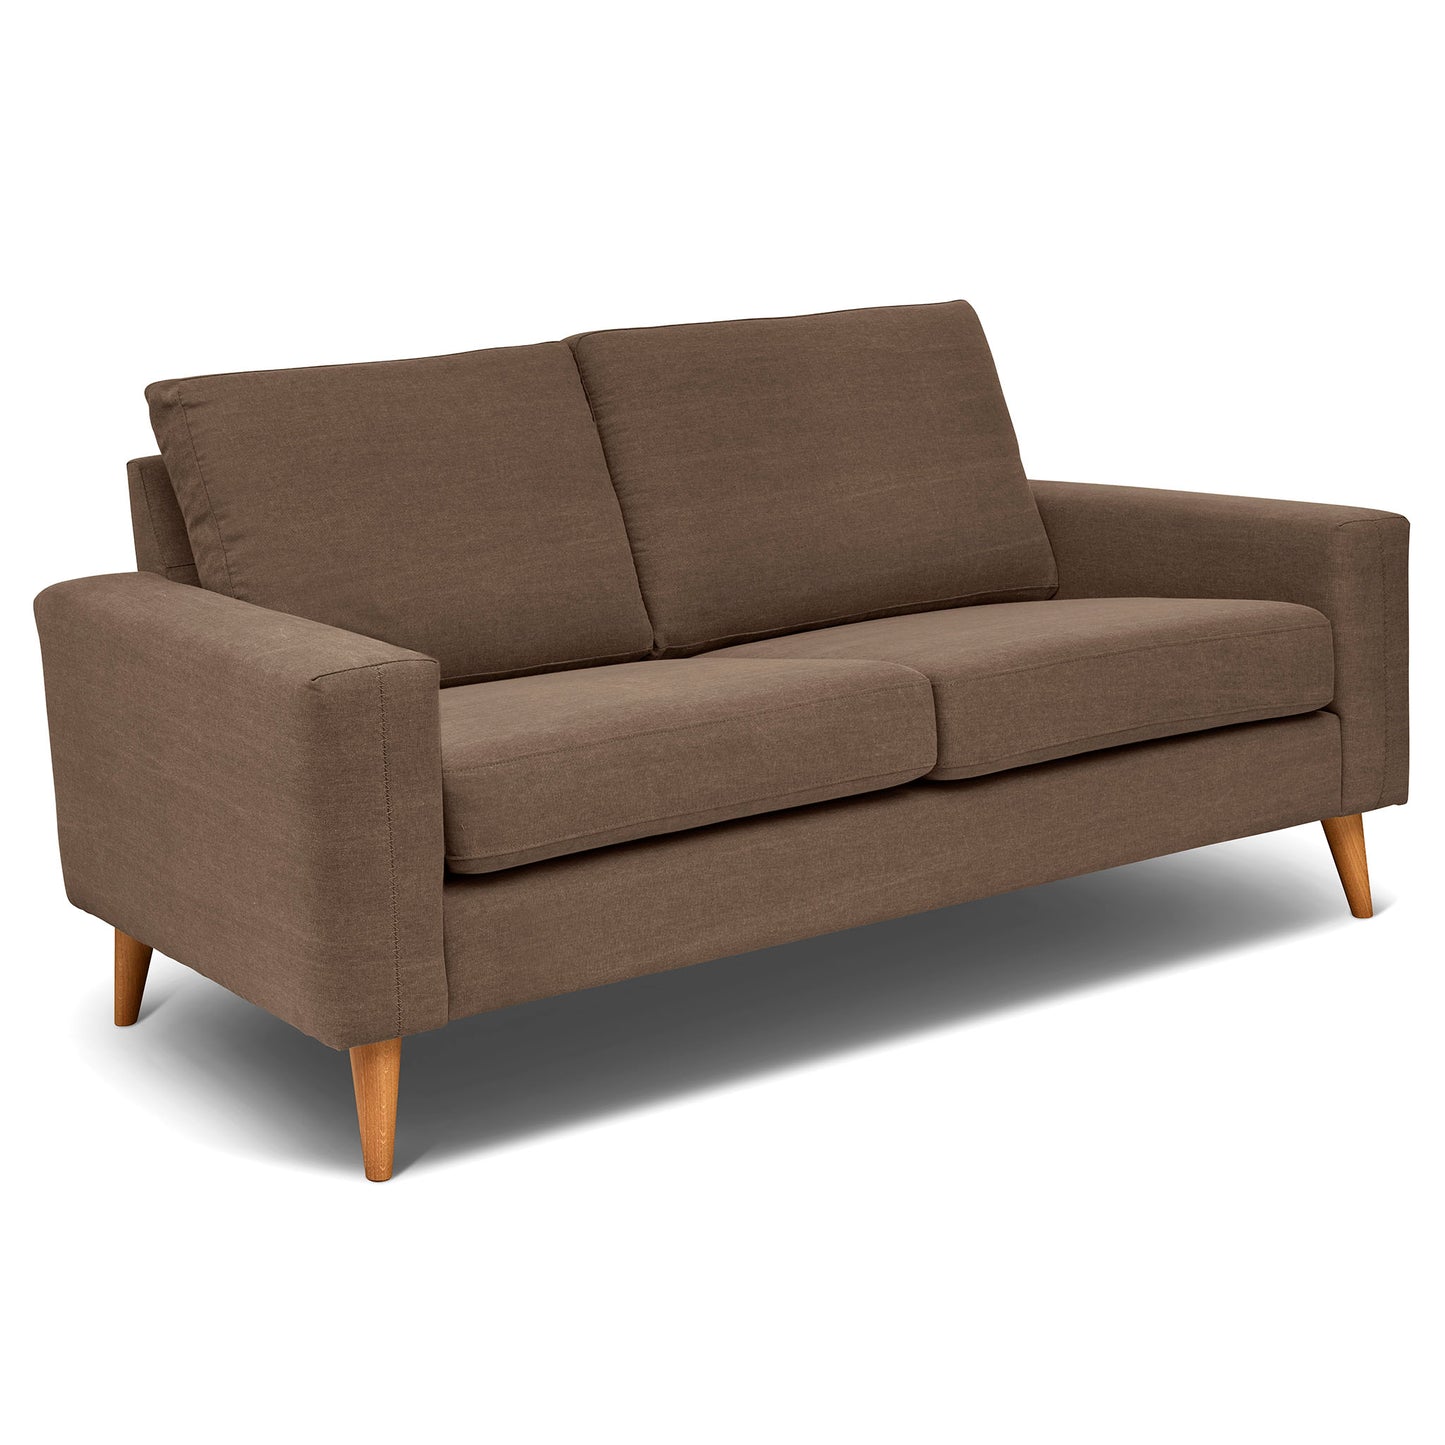 Brun 2,5-sits soffa 184 cm bred, som är sittvänlig för äldre